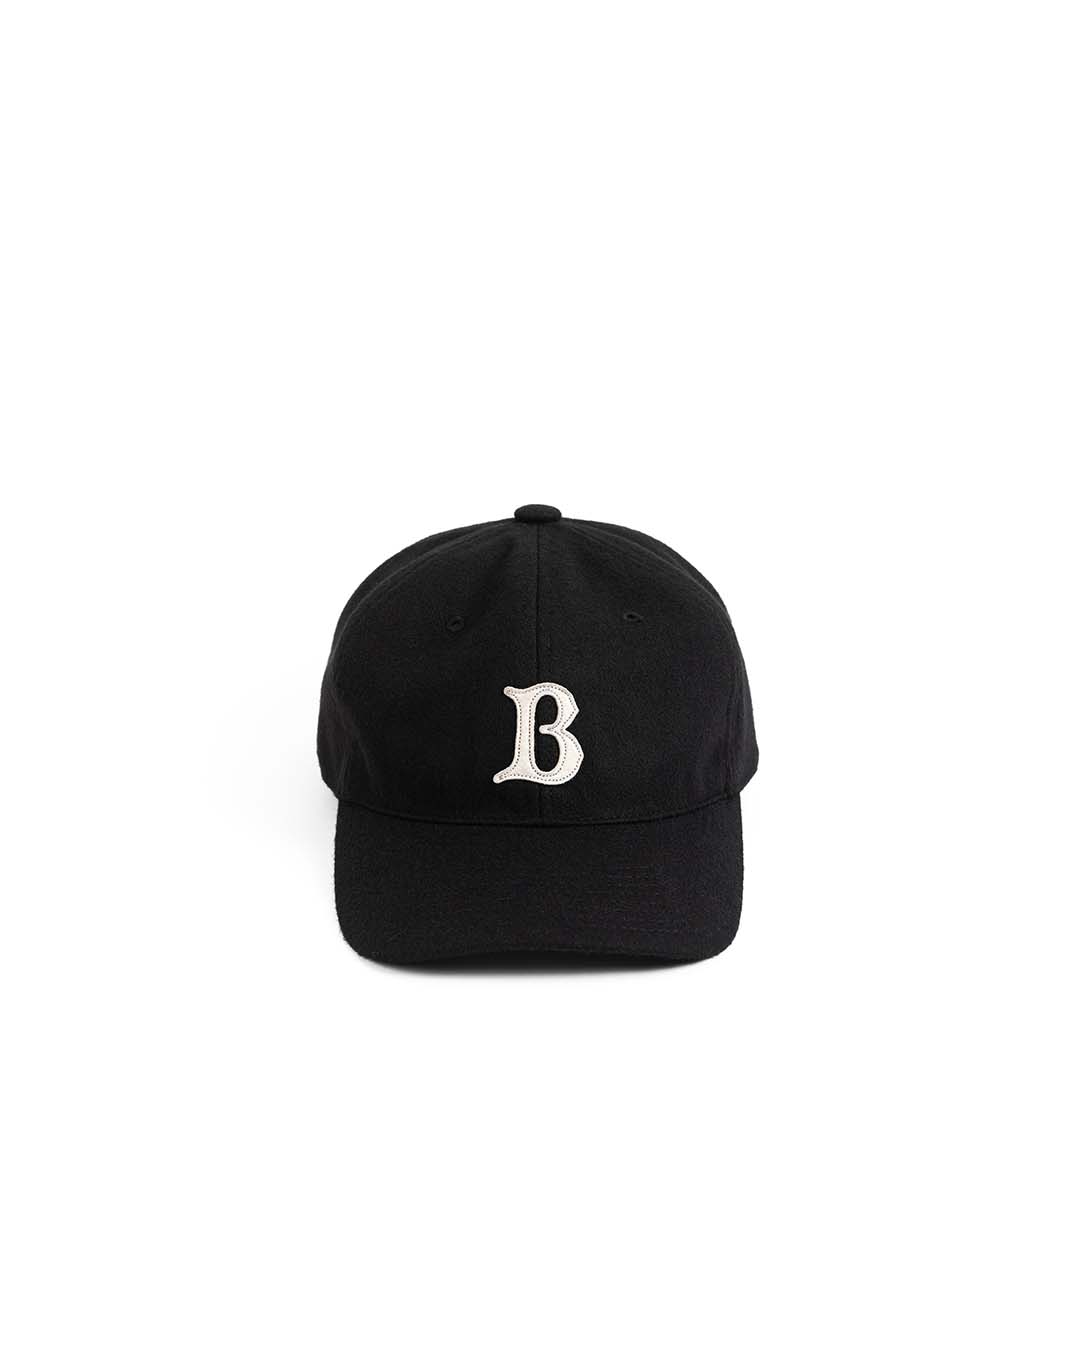 LB WOOL BASEBALL CAP (black)